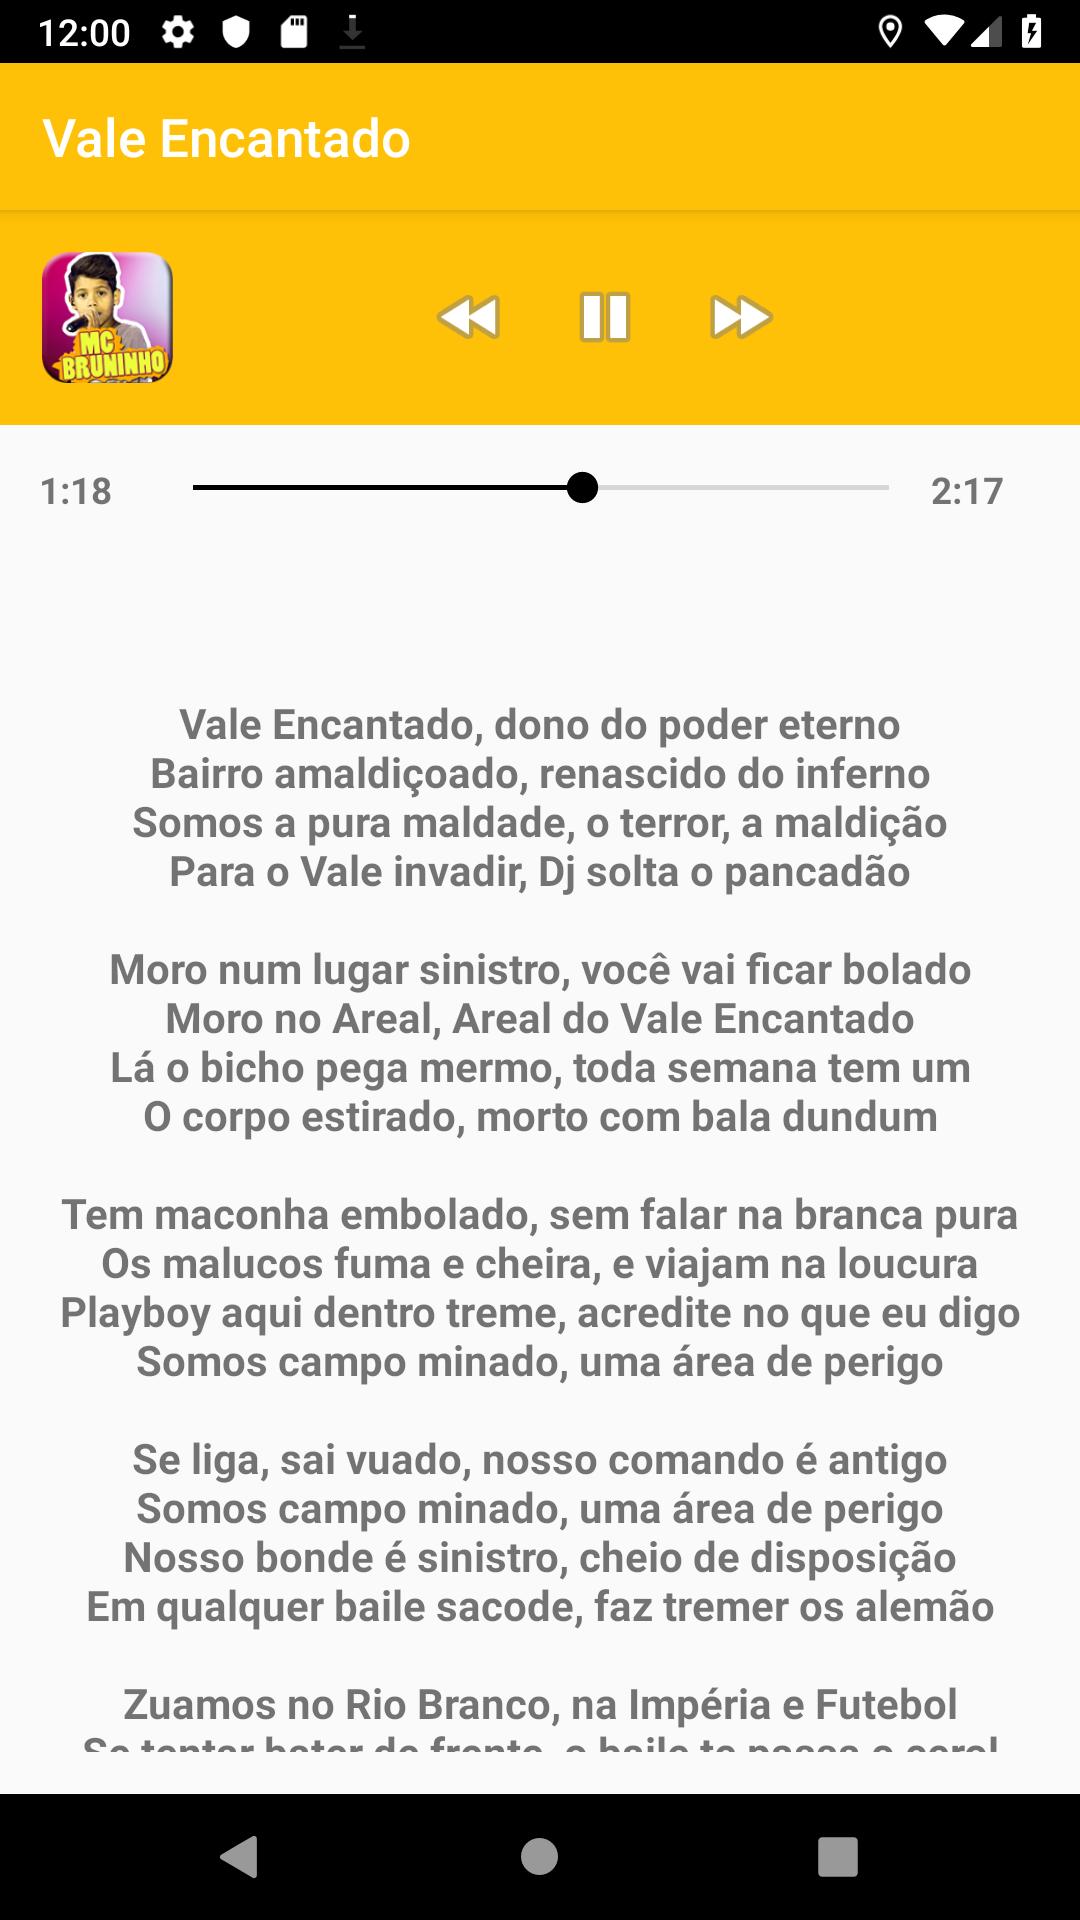 Jogo Do Amor - MC BRUNINHO musica + letras APK for Android Download